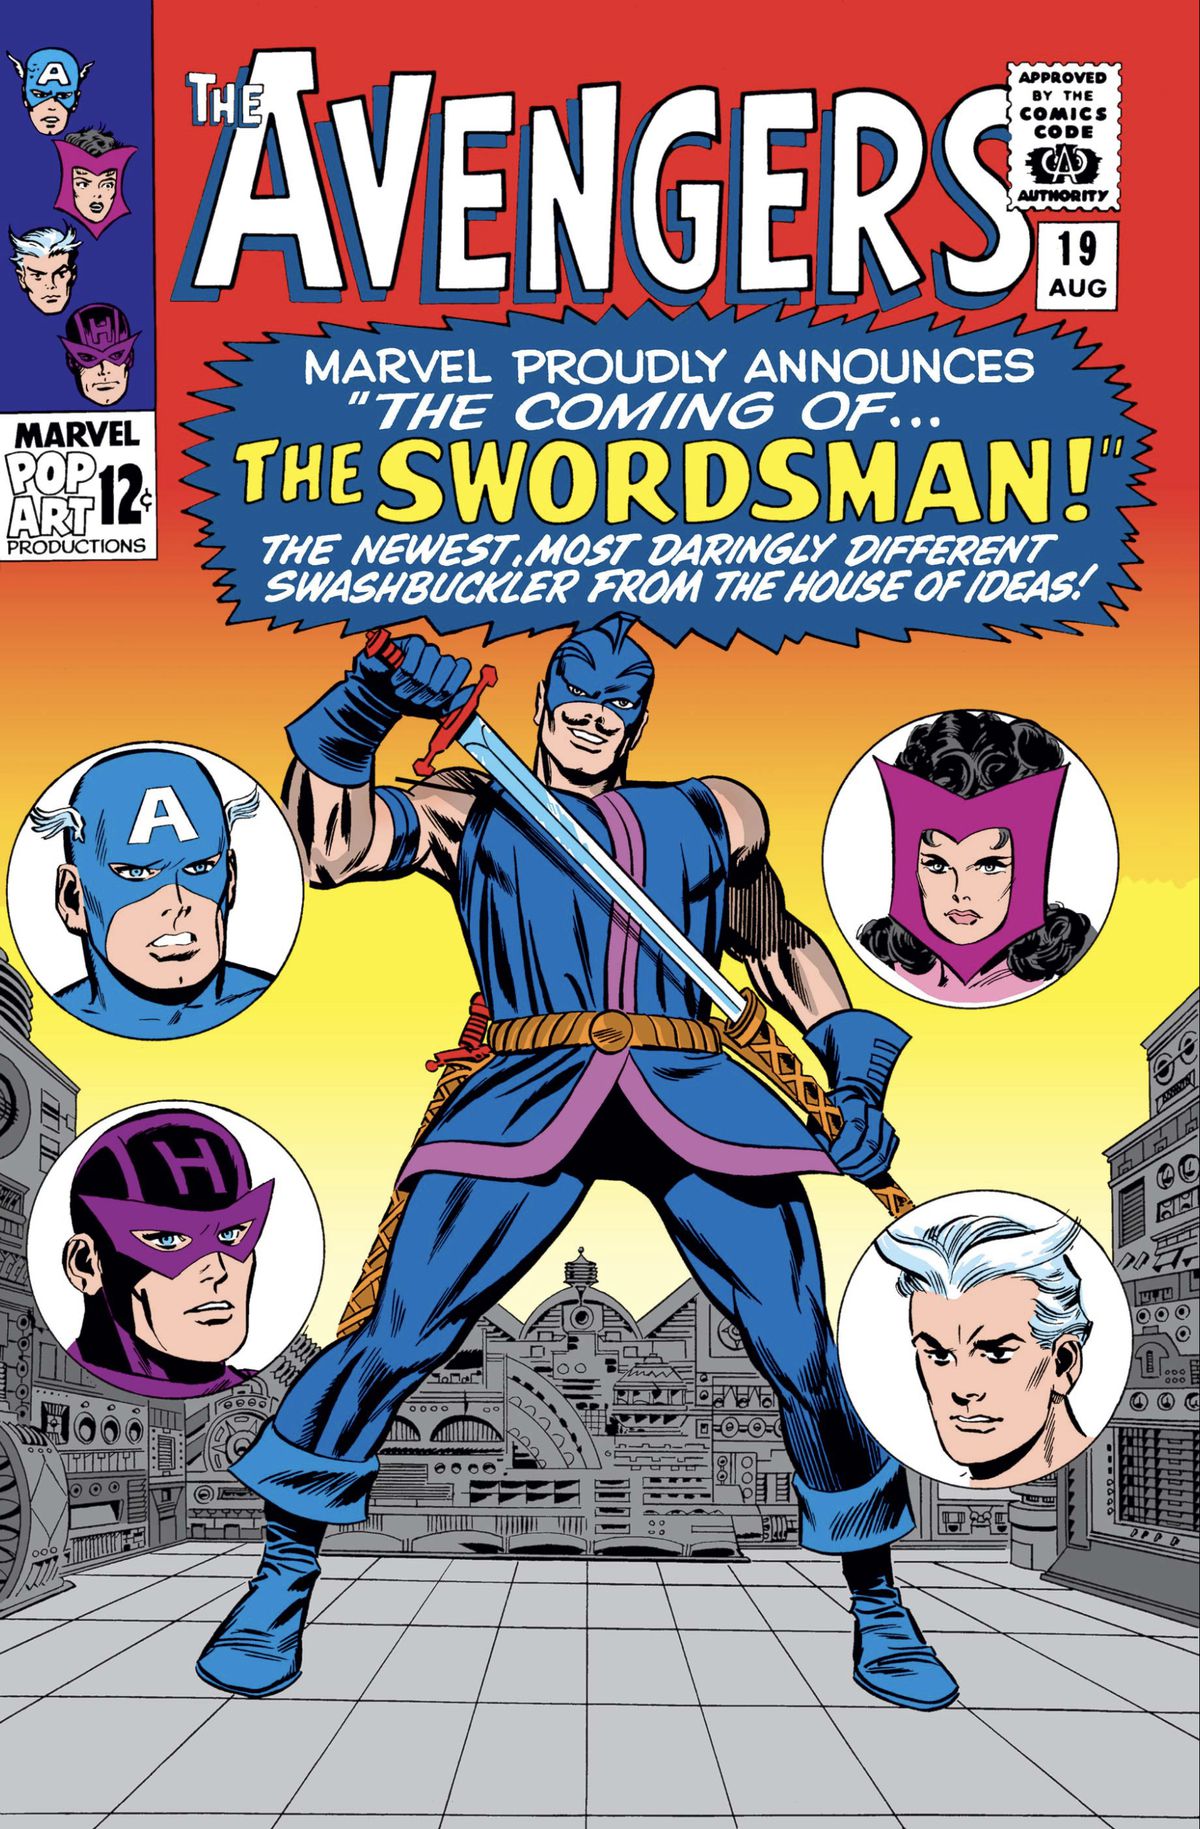 Jack Duquesne estrae la sua spada, in una tunica blu, calzamaglia e stivali, con una maschera che fa in modo di mostrare i suoi baffi spavaldi, sulla copertina di The Avengers #19 (1965). 